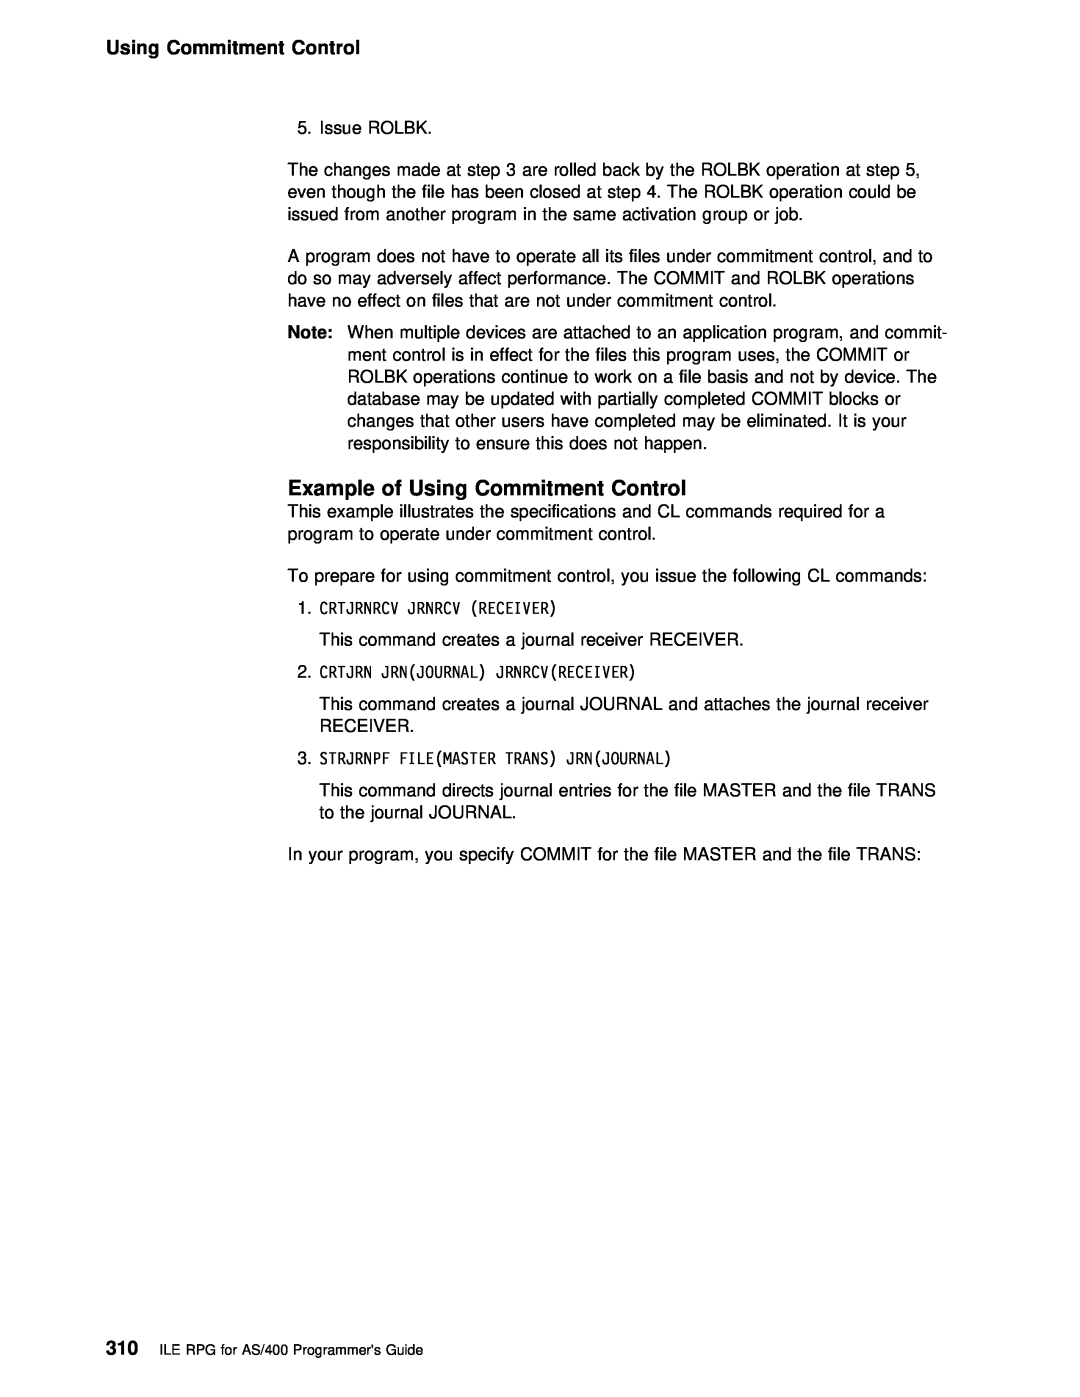 IBM AS/400 manual Example of Using Commitment Control, Crtjrnrcv Jrnrcv Receiver, Crtjrn Jrnjournal Jrnrcvreceiver 